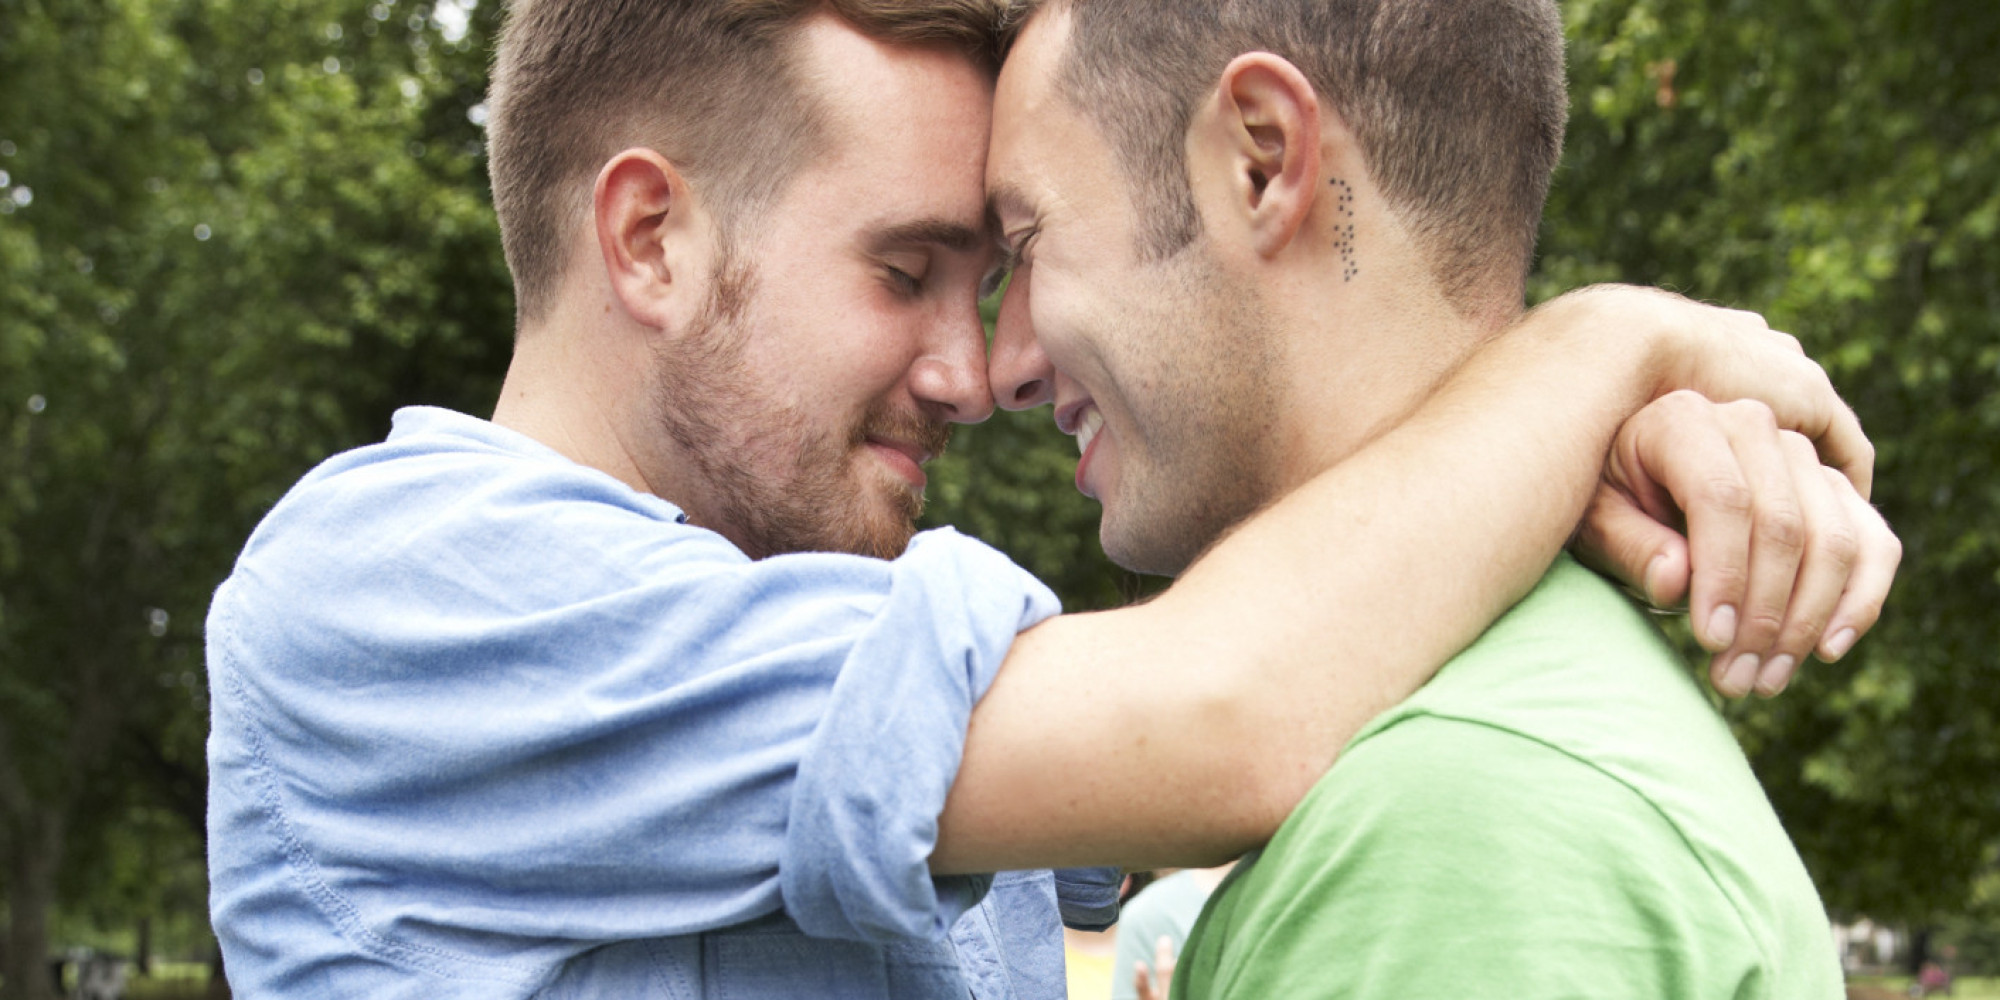 геи красиво целуются видео фото 106